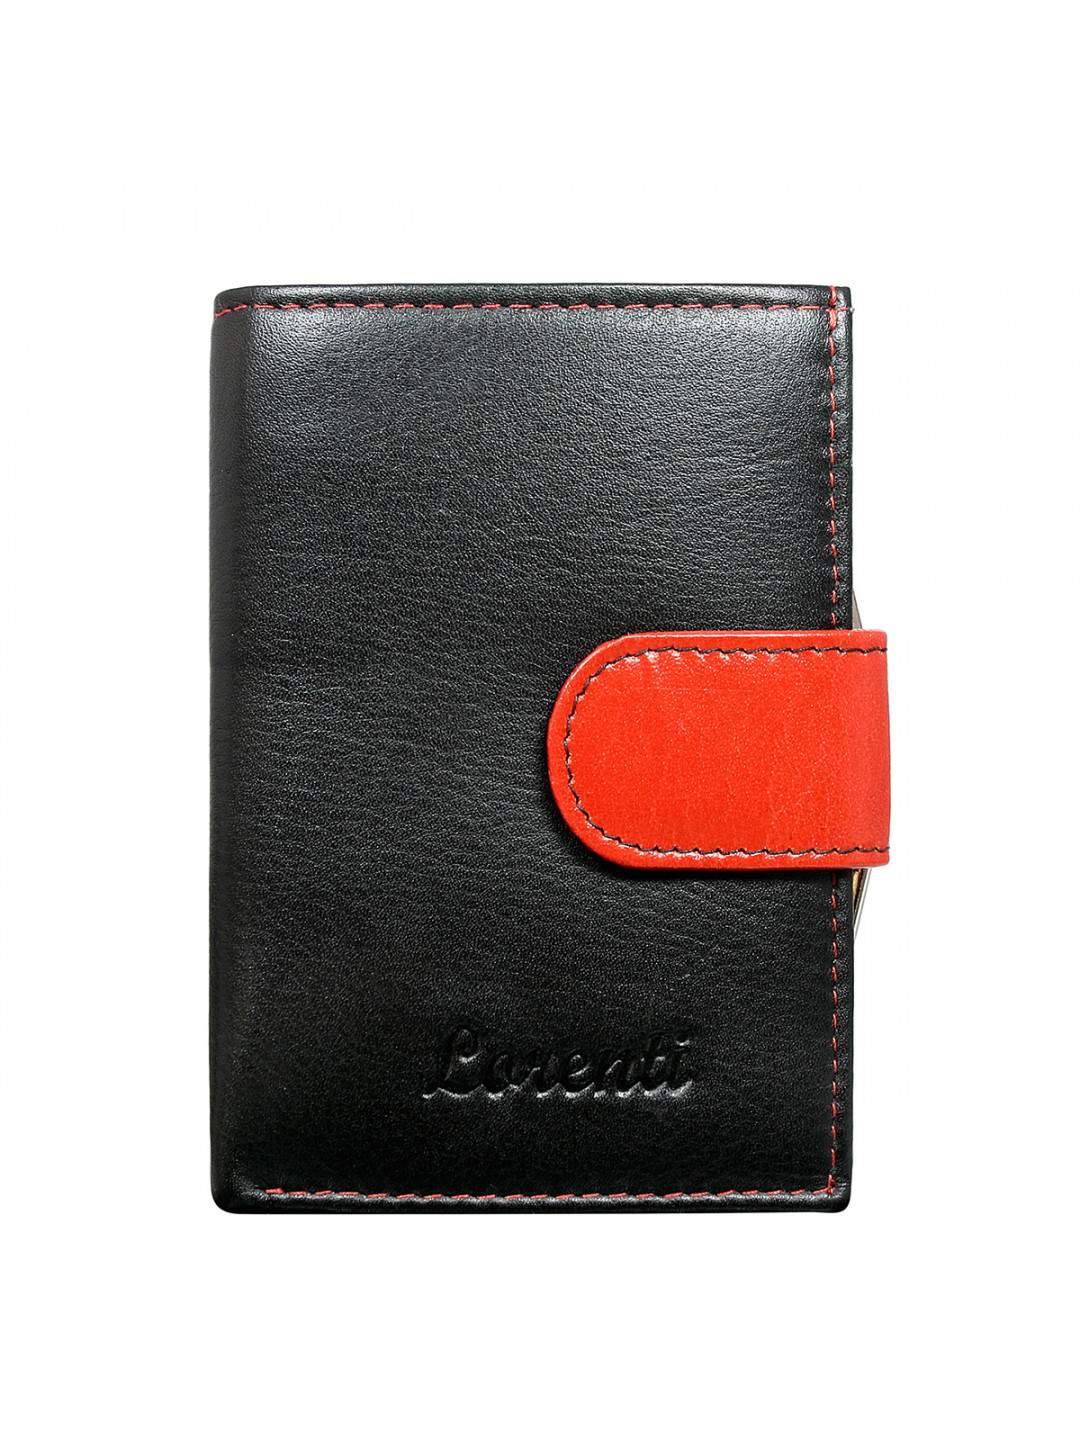 Dámská stylová kožená peněženka Adriana červená černá